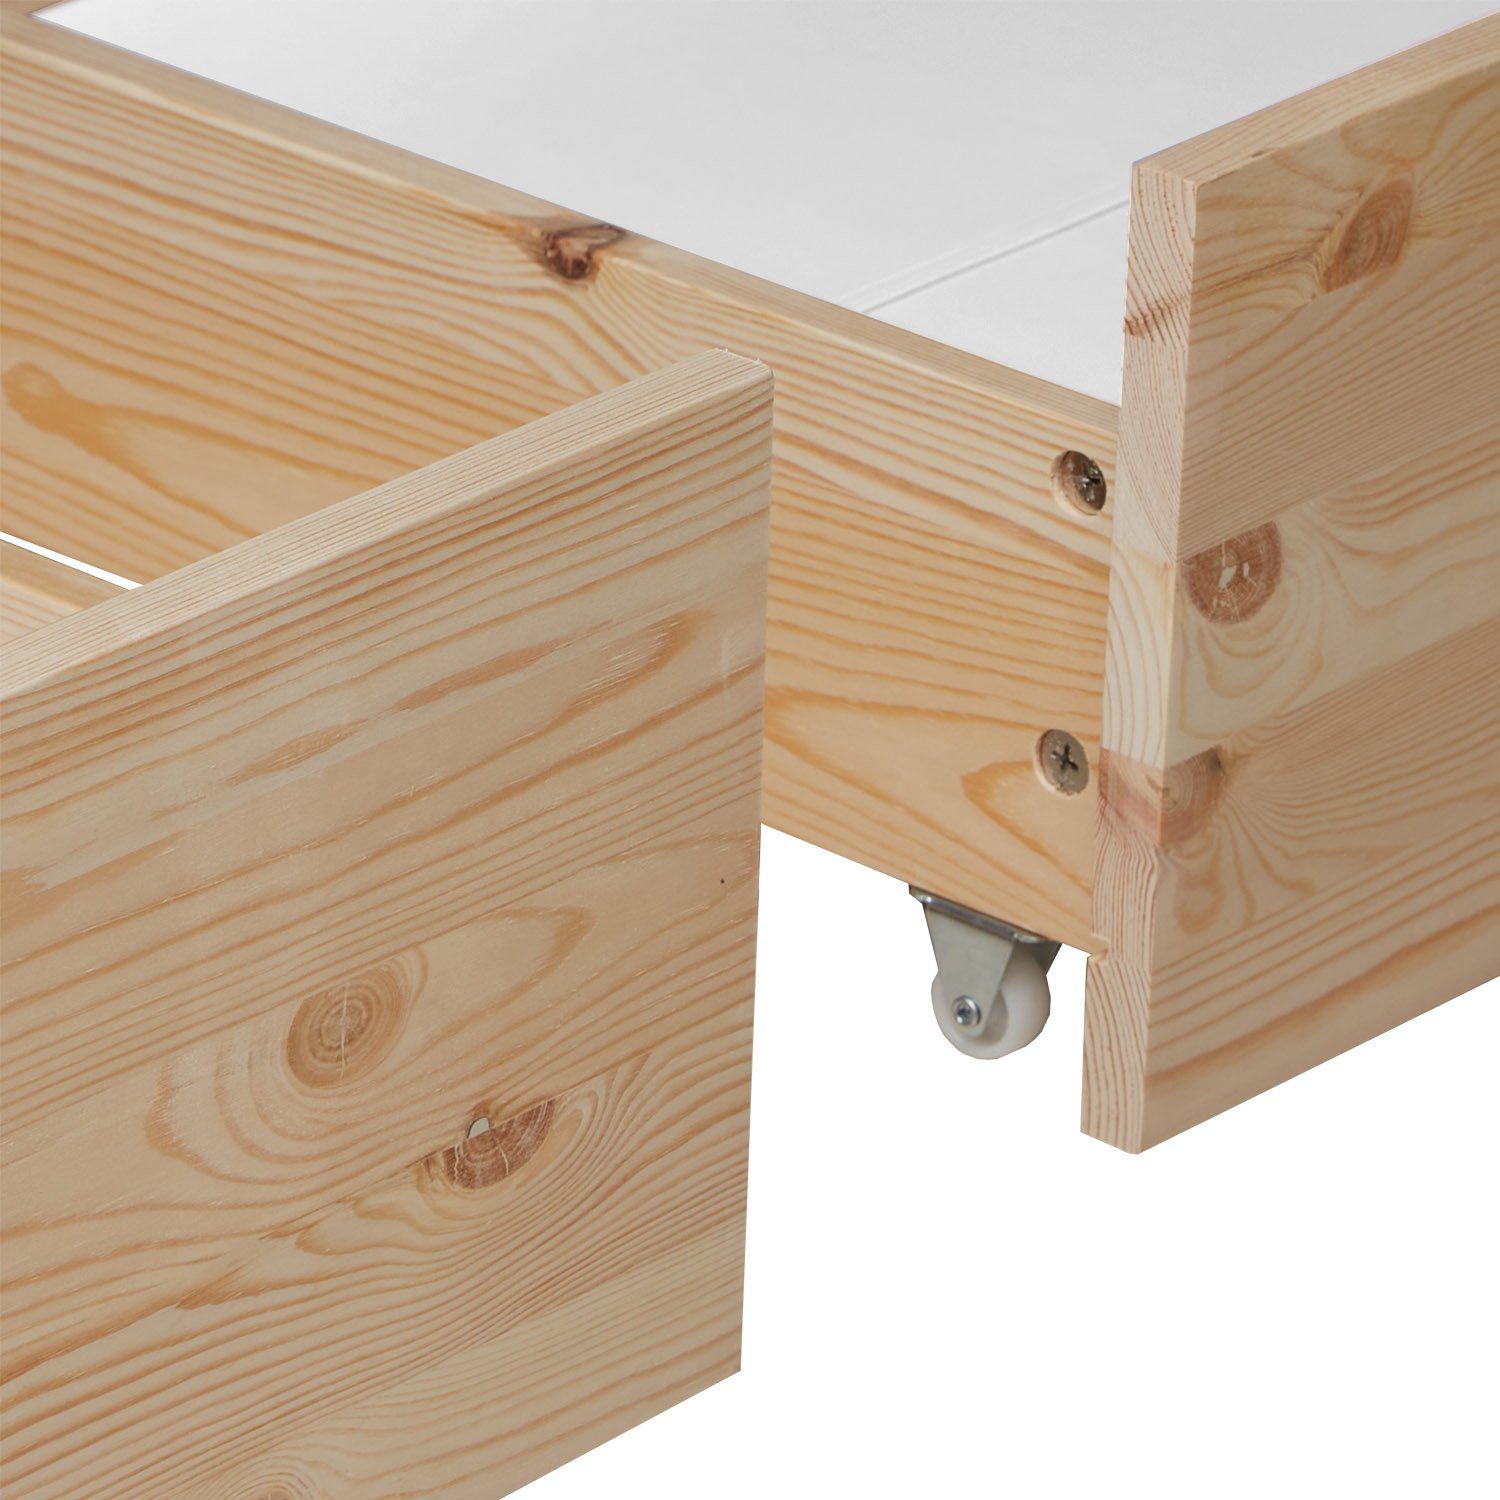 Homestyle4u Bettschubkasten 2er Aufbewahrung Schublade Bettkasten Holz Set